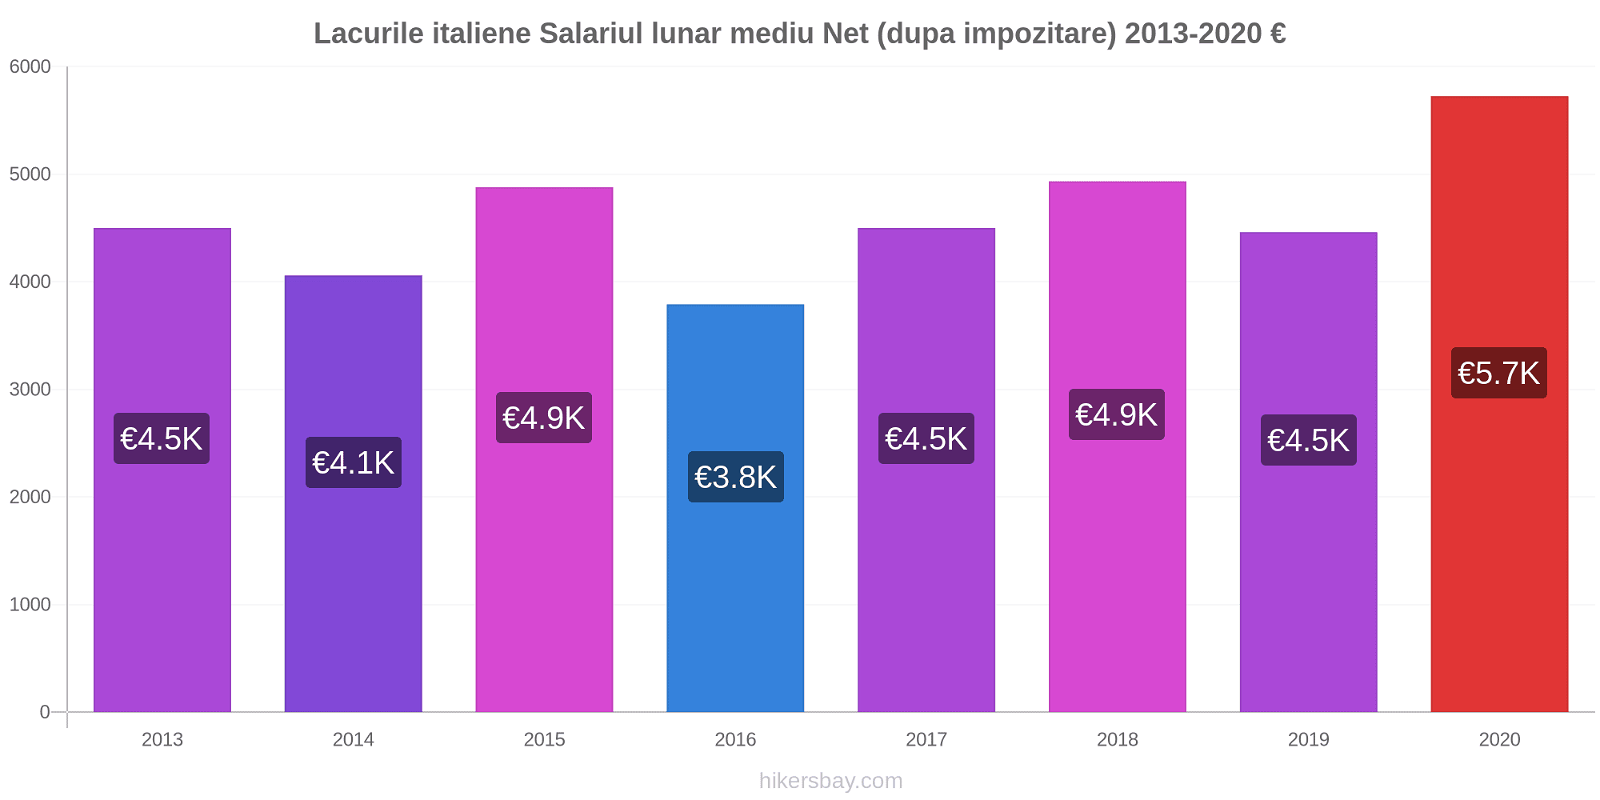 Lacurile italiene modificări de preț Salariul lunar mediu Net (dupa impozitare) hikersbay.com